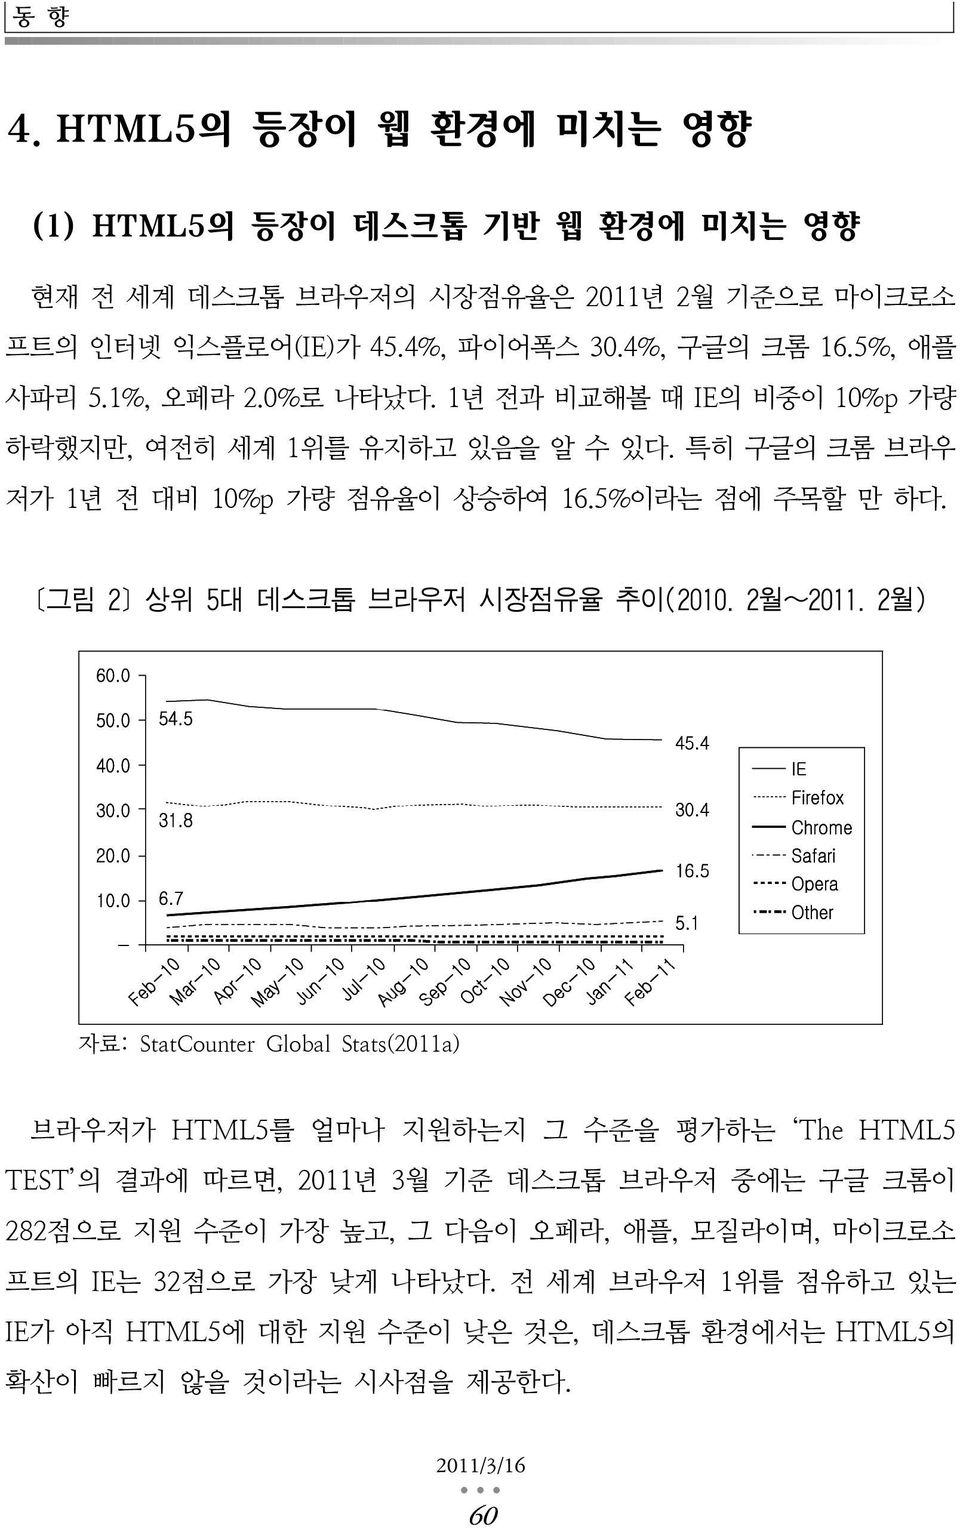 [그림 2] 상위 5대 데스크톱 브라우저 시장점유율 추이(2010. 2월~2011.